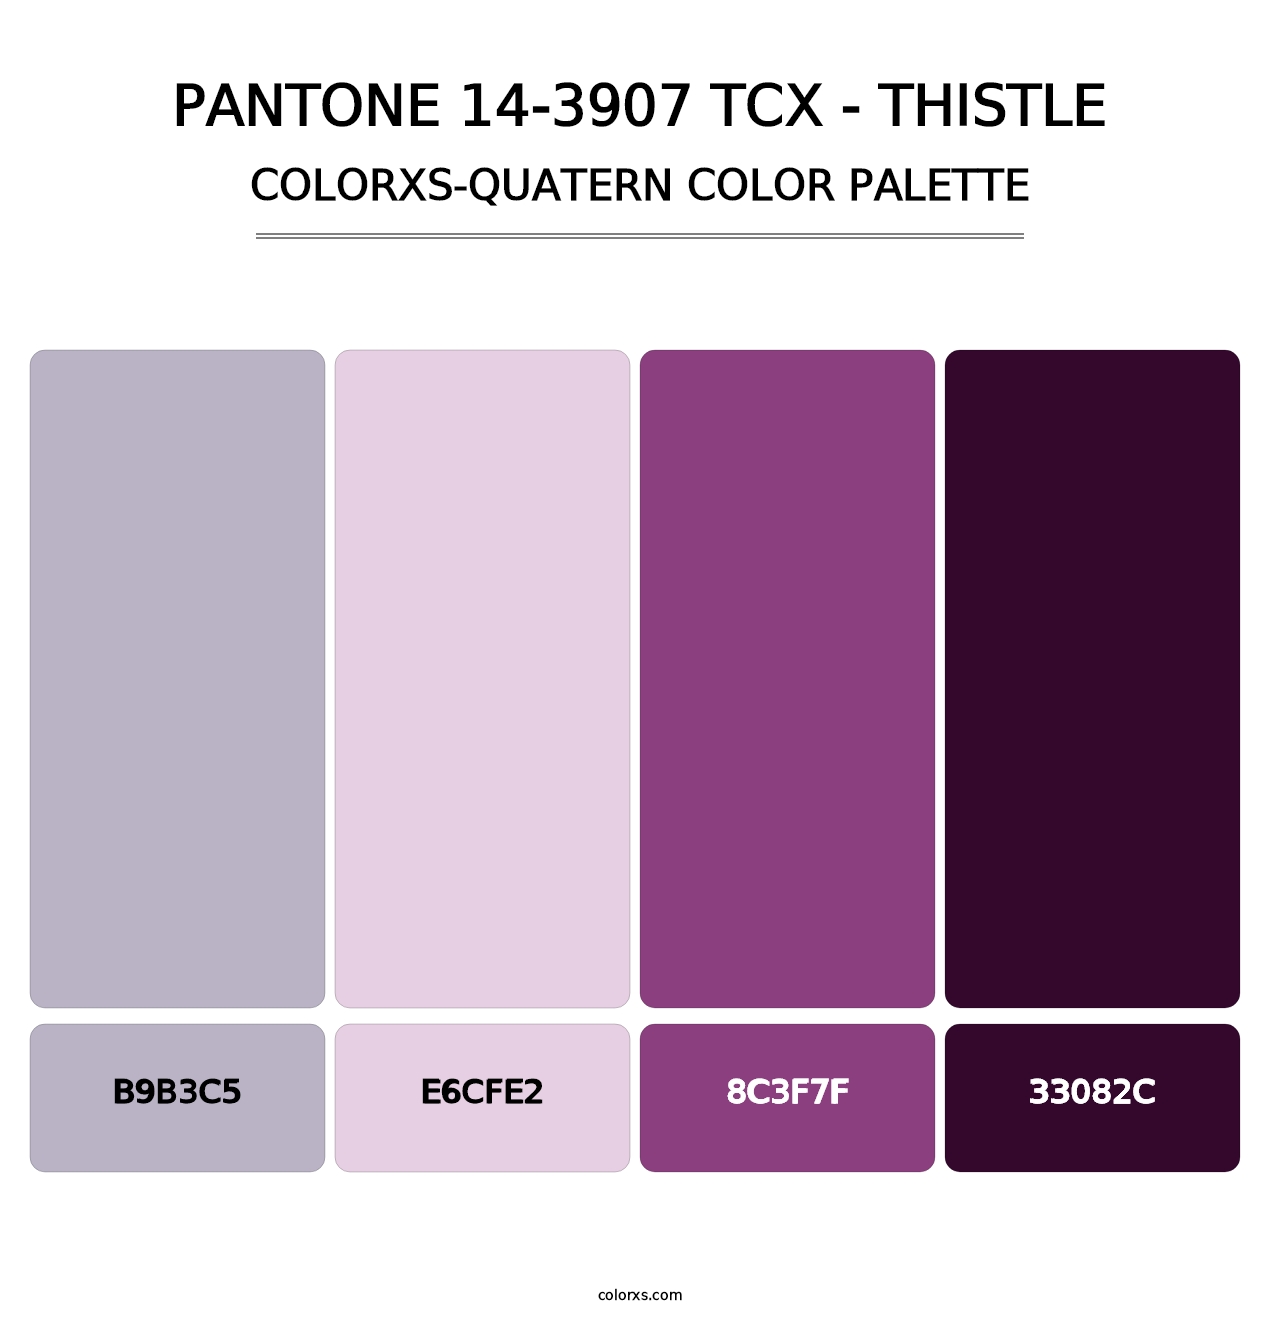 PANTONE 14-3907 TCX - Thistle - Colorxs Quatern Palette